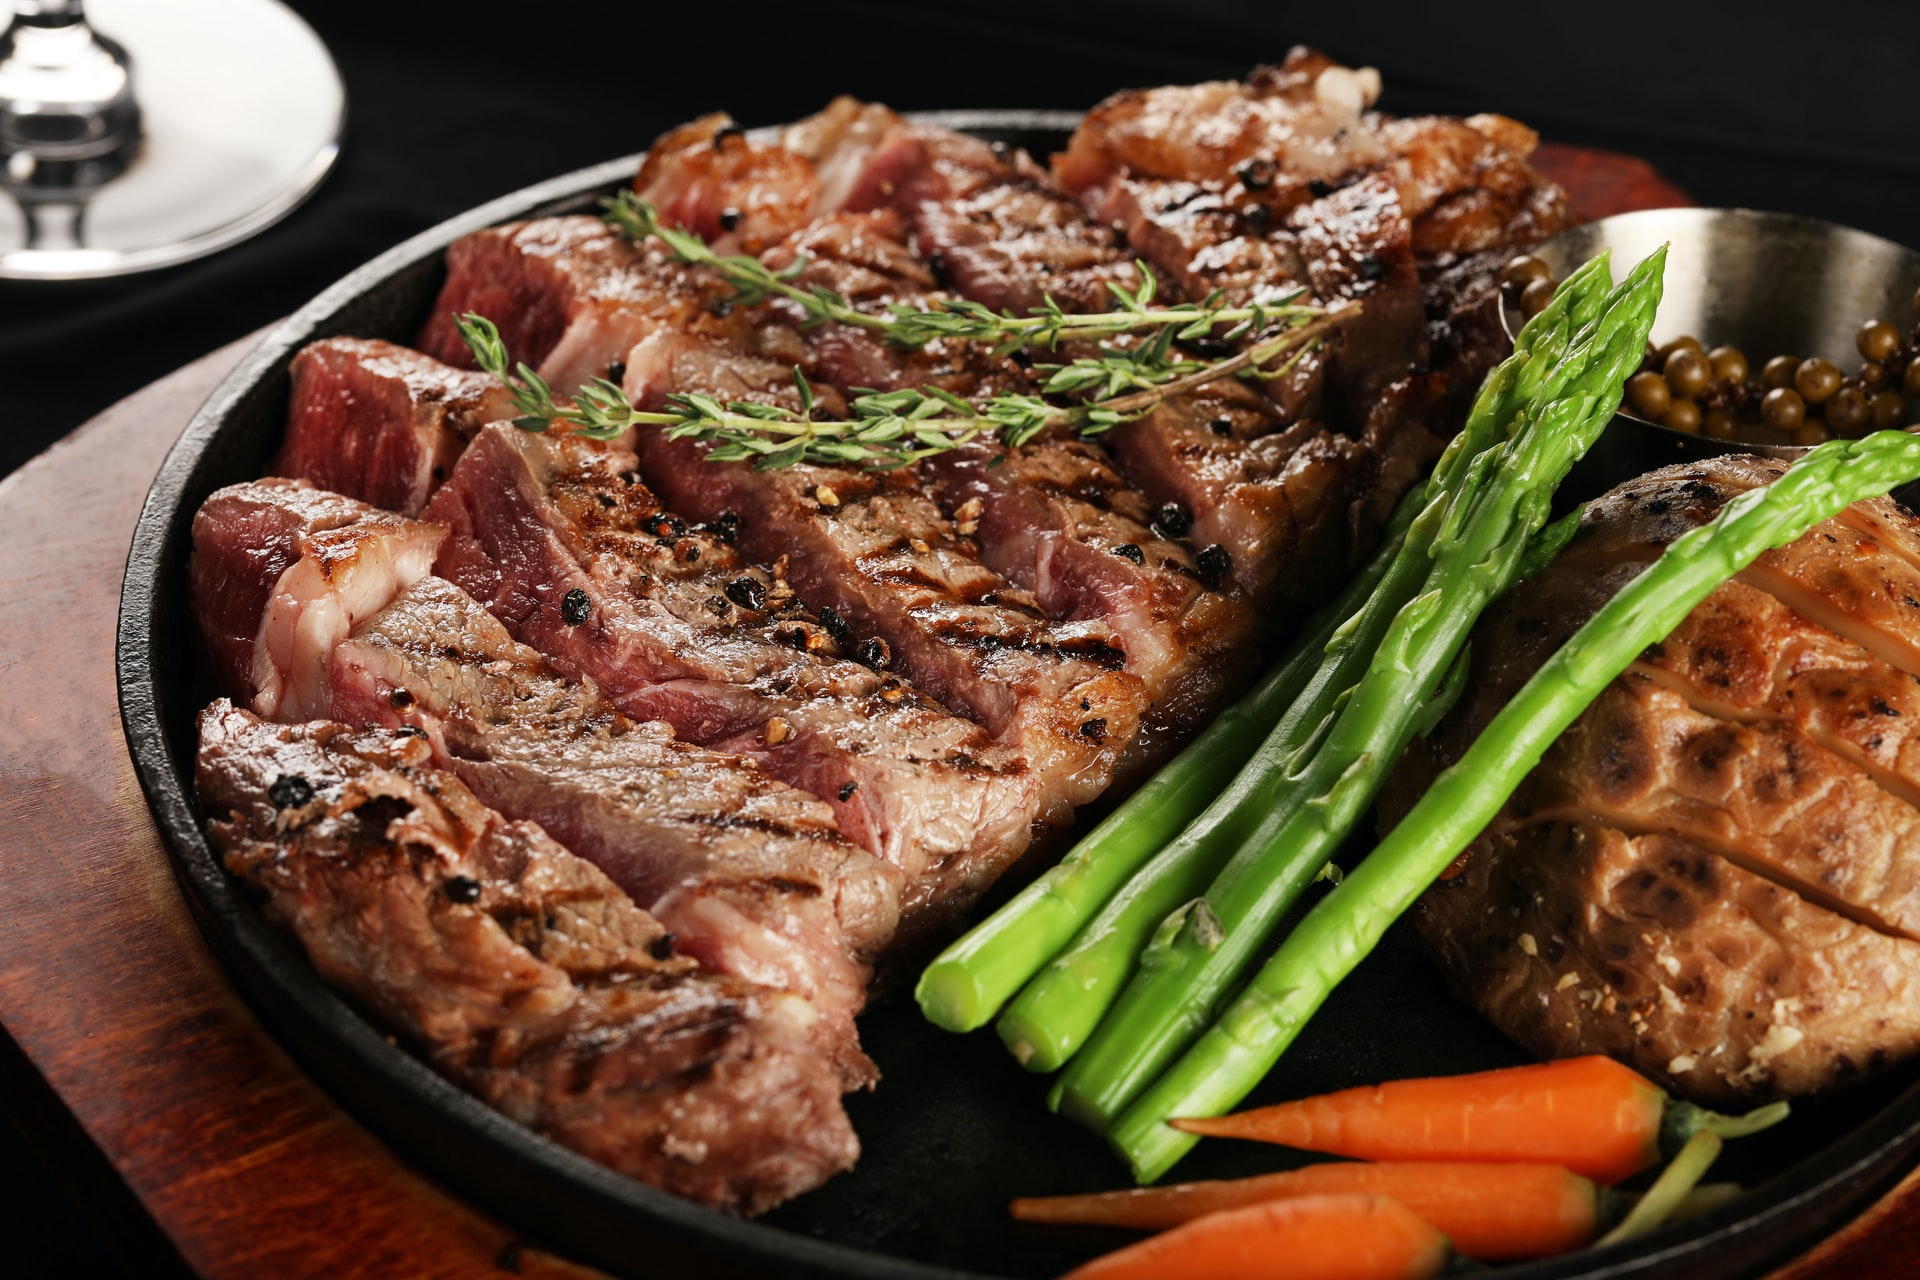 Striploin steak and vegetables